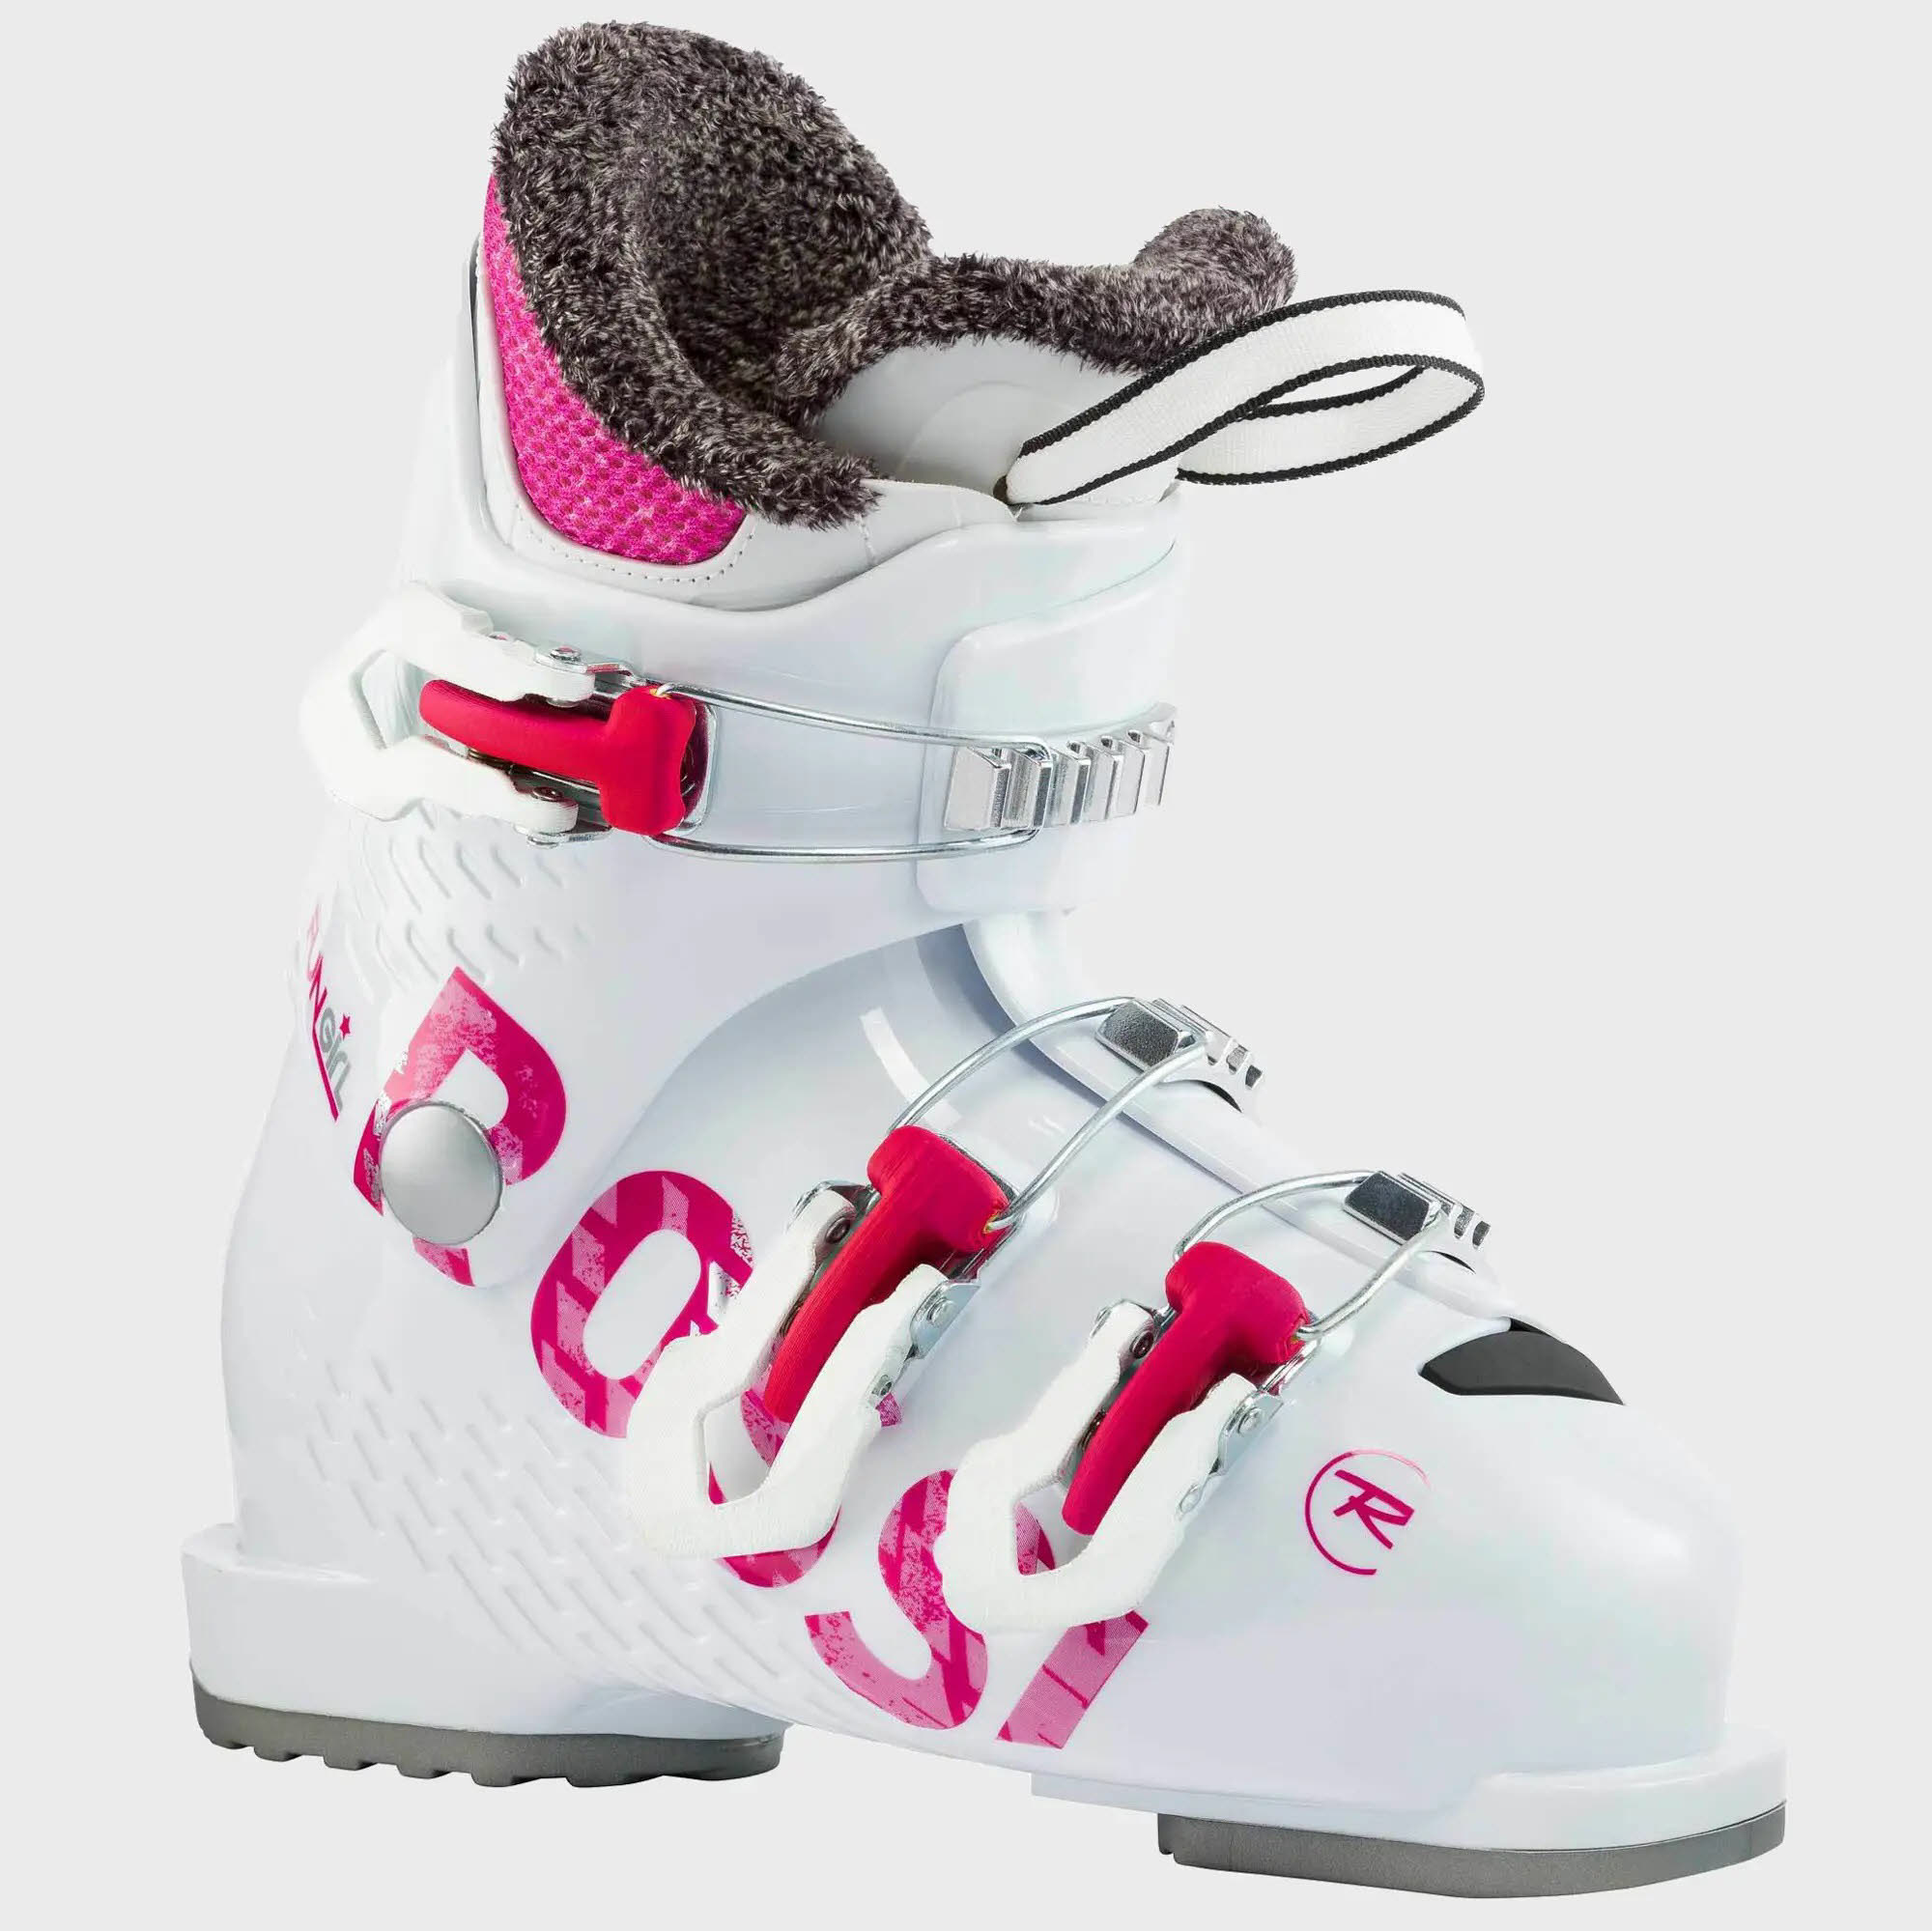 Rossignol FUN GIRL 3 Mädchen Ski Alpin Skischuhe Wintersport 22/23 weiß